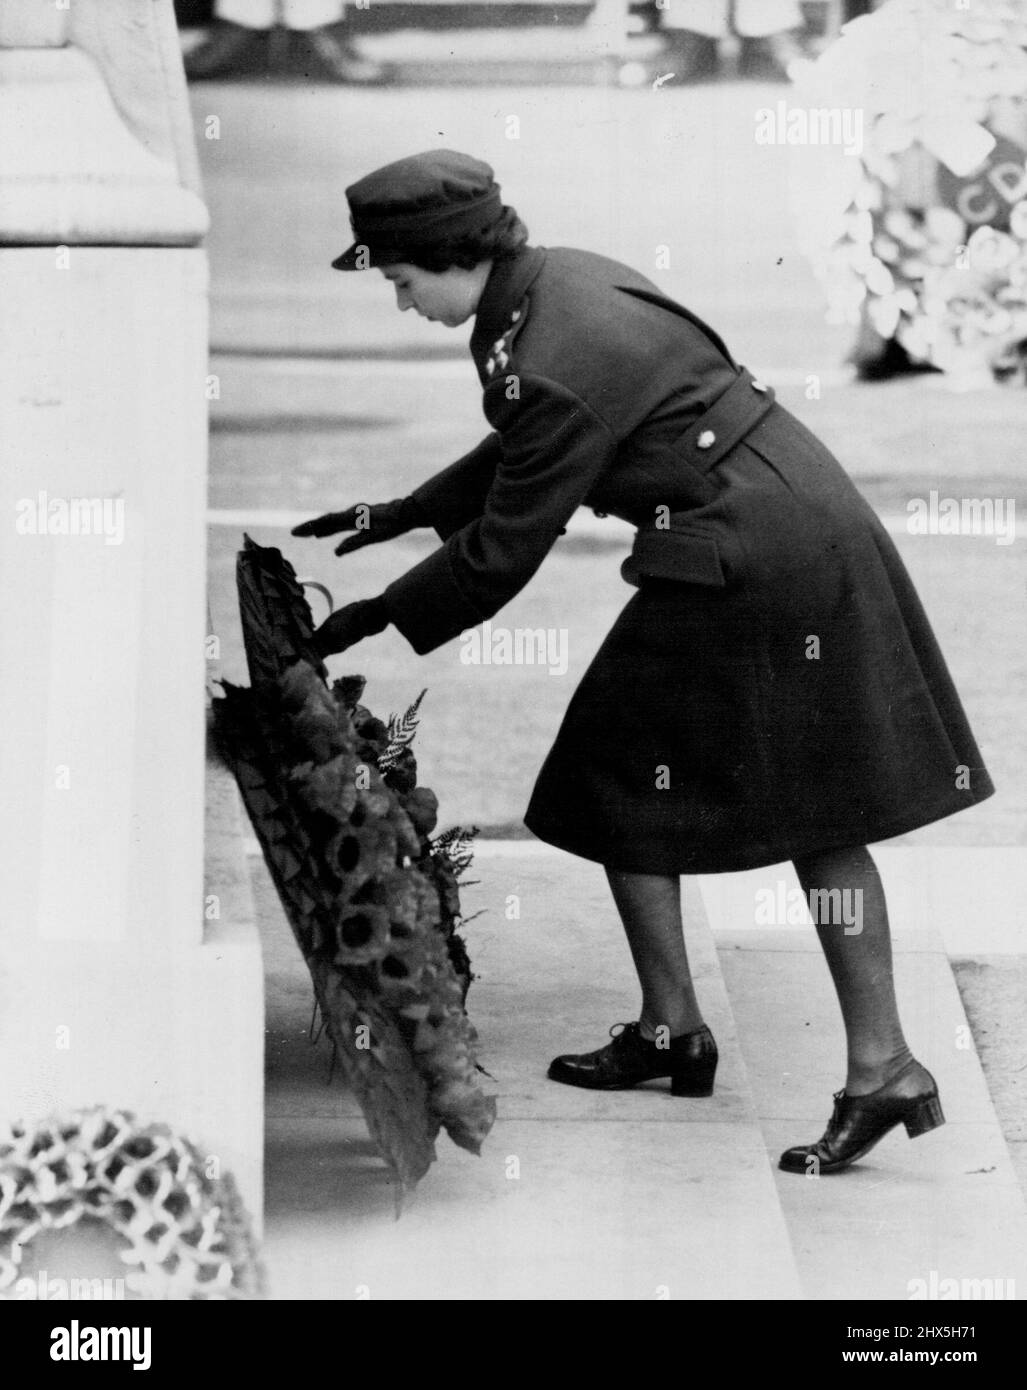 Prinzessin legt ihren Kranz auf Cenotaph. Prinzessin Elizabeth, in W.R.A.C. Uniform, legte ihren Kranz heute auf das Cenotaph (Gedenktag). Unter einer Herbstsonne, die durch Nebel bricht, führte der König, begleitet von Prinzessin Elizabeth und dem Herzog von Gloucester, heute im Cenotaph in Whitehall, London, die Hommage der Nation an die Toten zweier Weltkriege in feierlichem, beeindruckendem Zeremoniell an. (Gedenktag). 6. November 1949. (Foto von Reuterphoto). Stockfoto